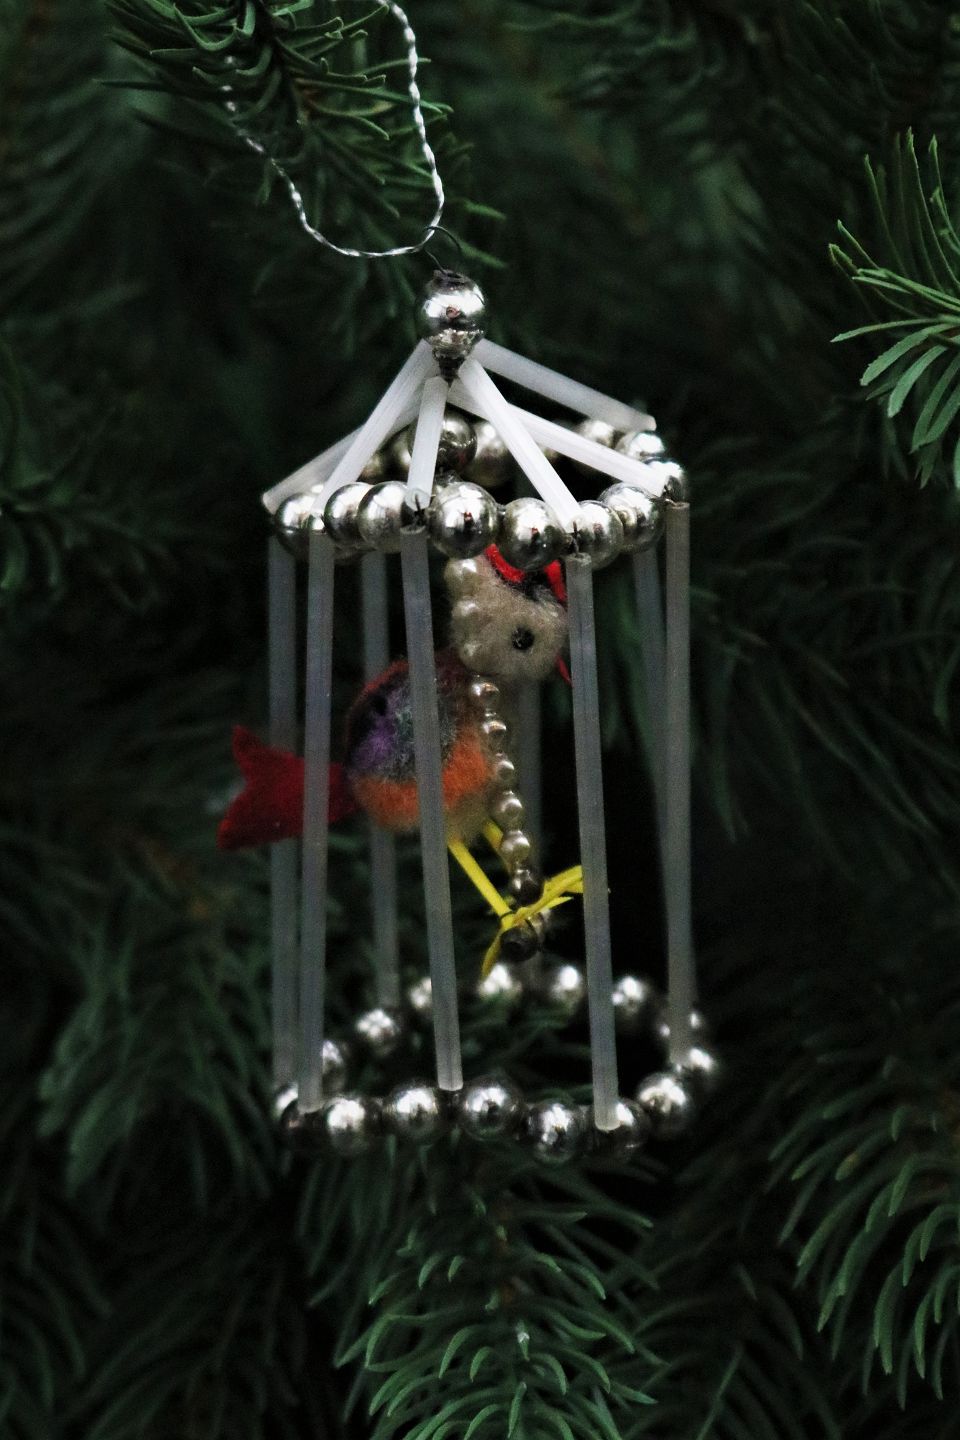 flise bundet der ovre K&Co - Fin gammel juletræs pynt fra 40érne i form af lille fuglebur med  glas perler og